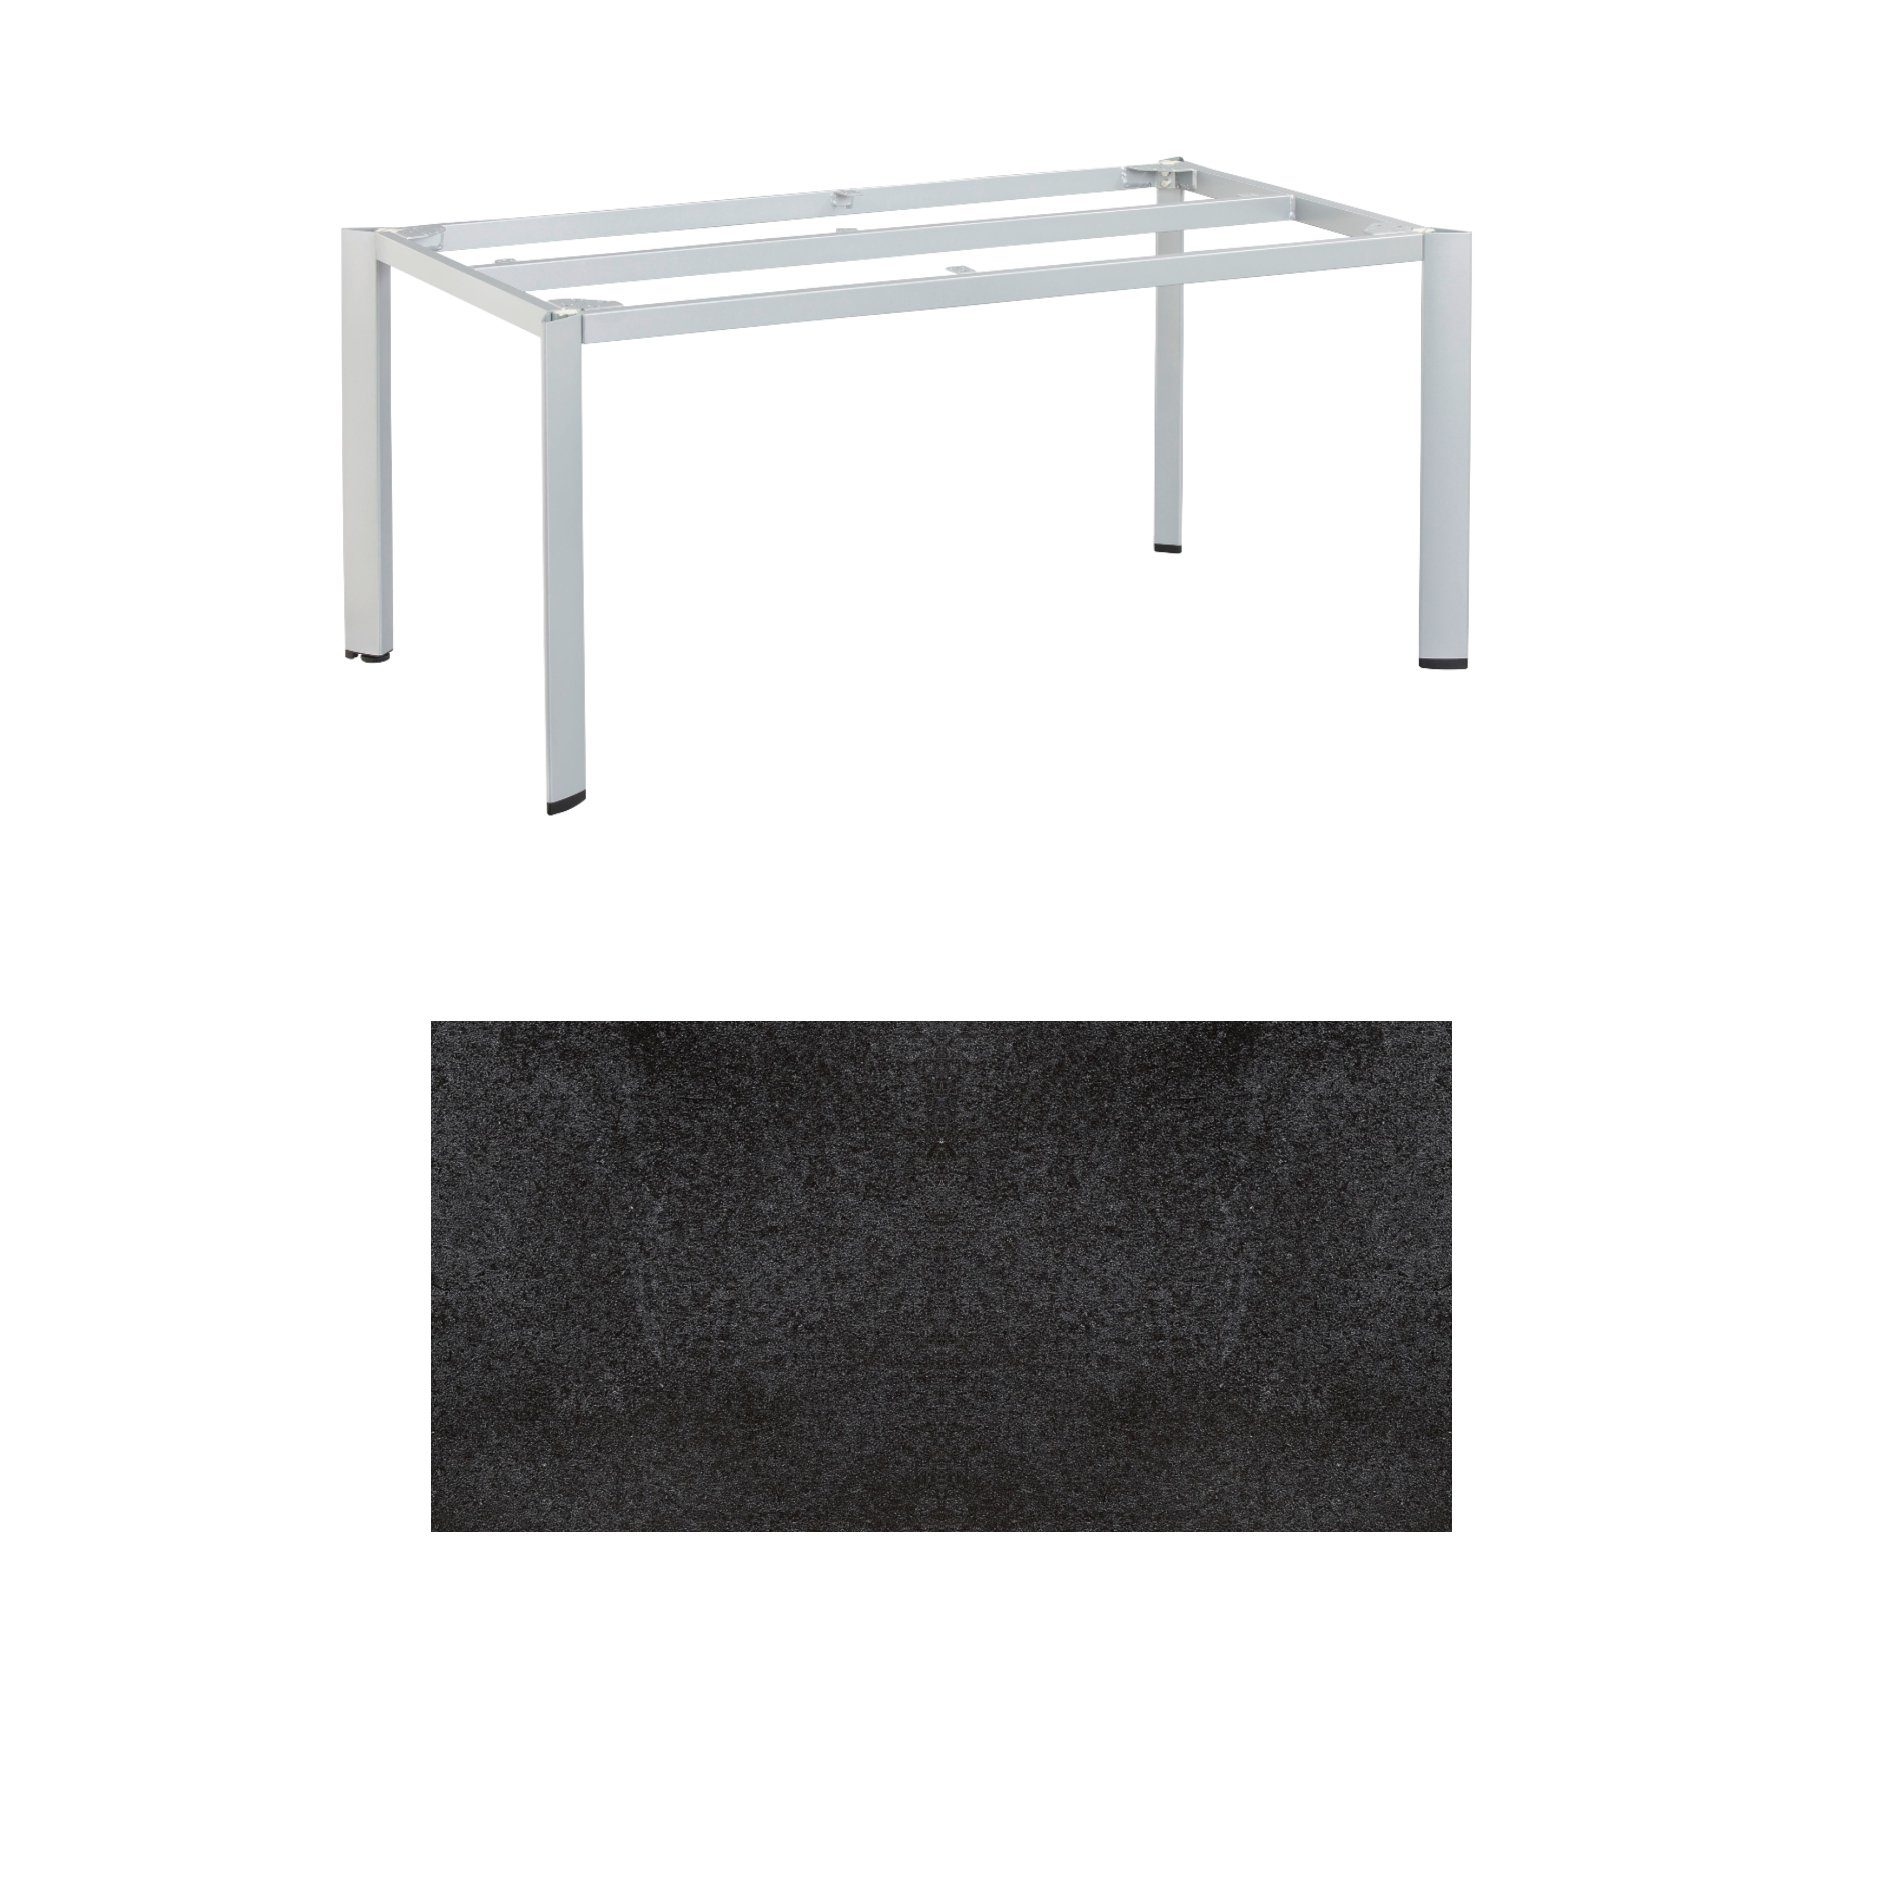 Kettler "Edge" Gartentisch, Tischgestell 160x95cm, Alu silber, mit Tischplatte HPL Stahl